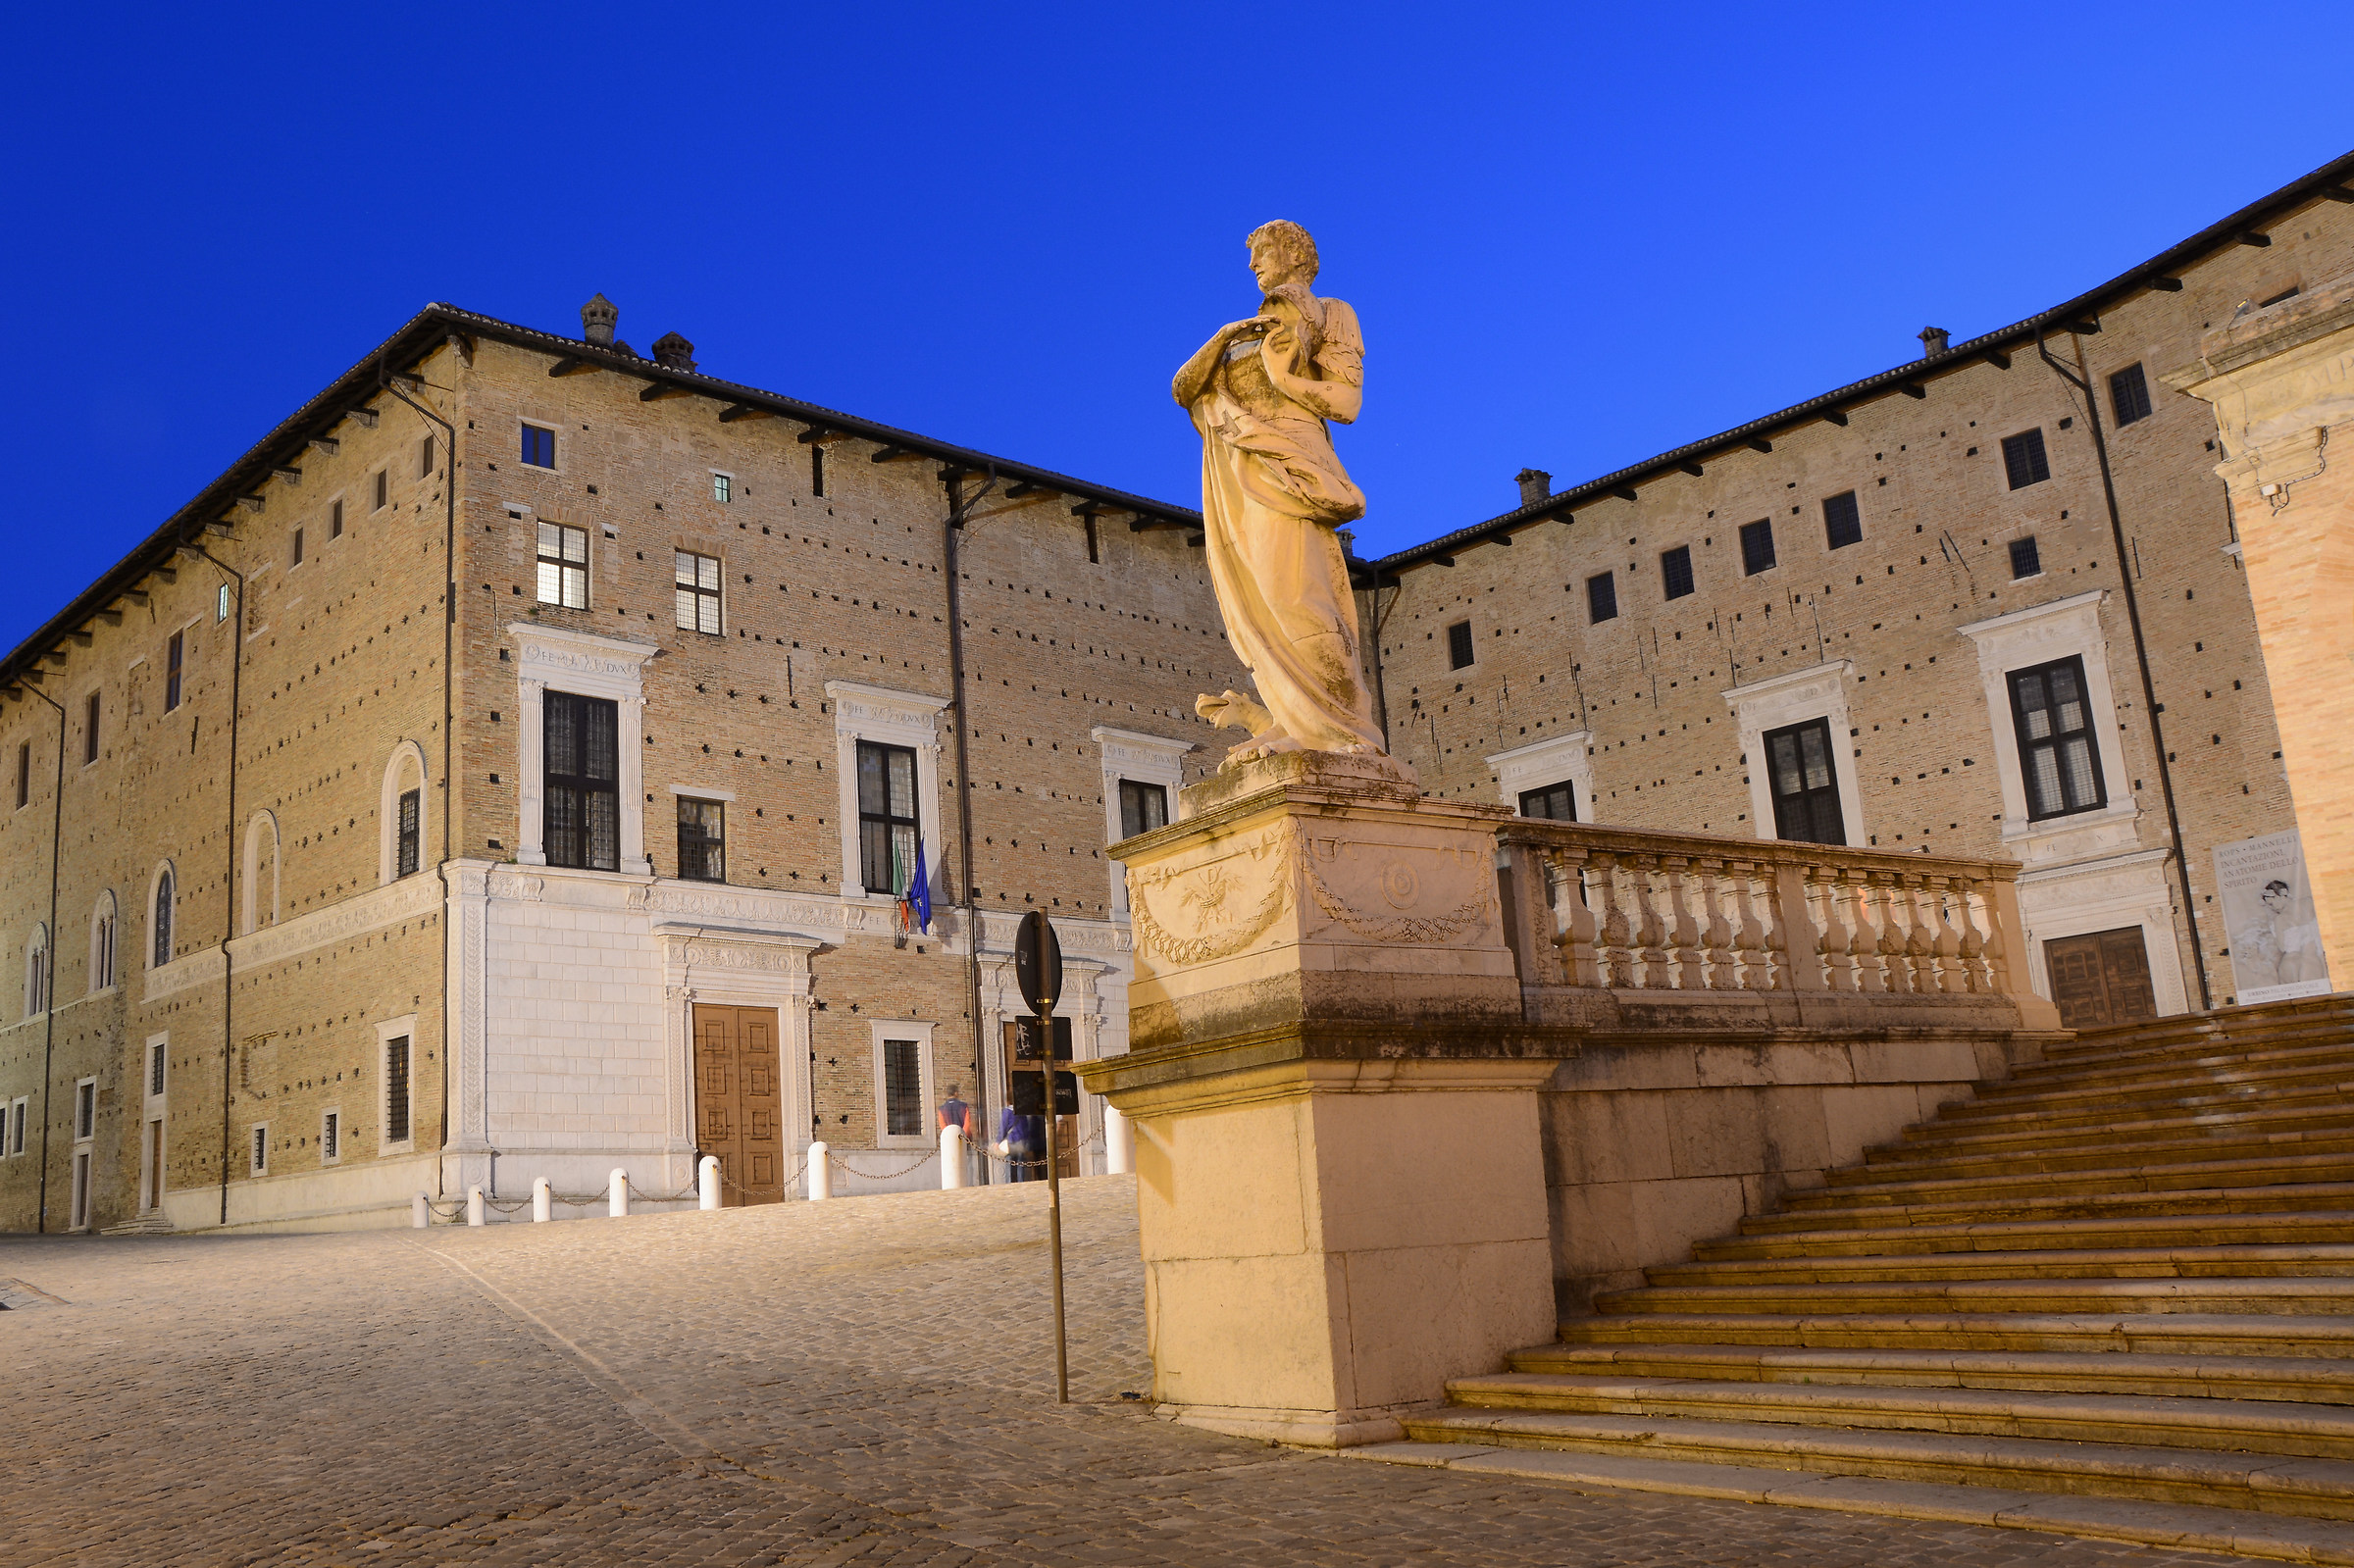 Una notte a Urbino...